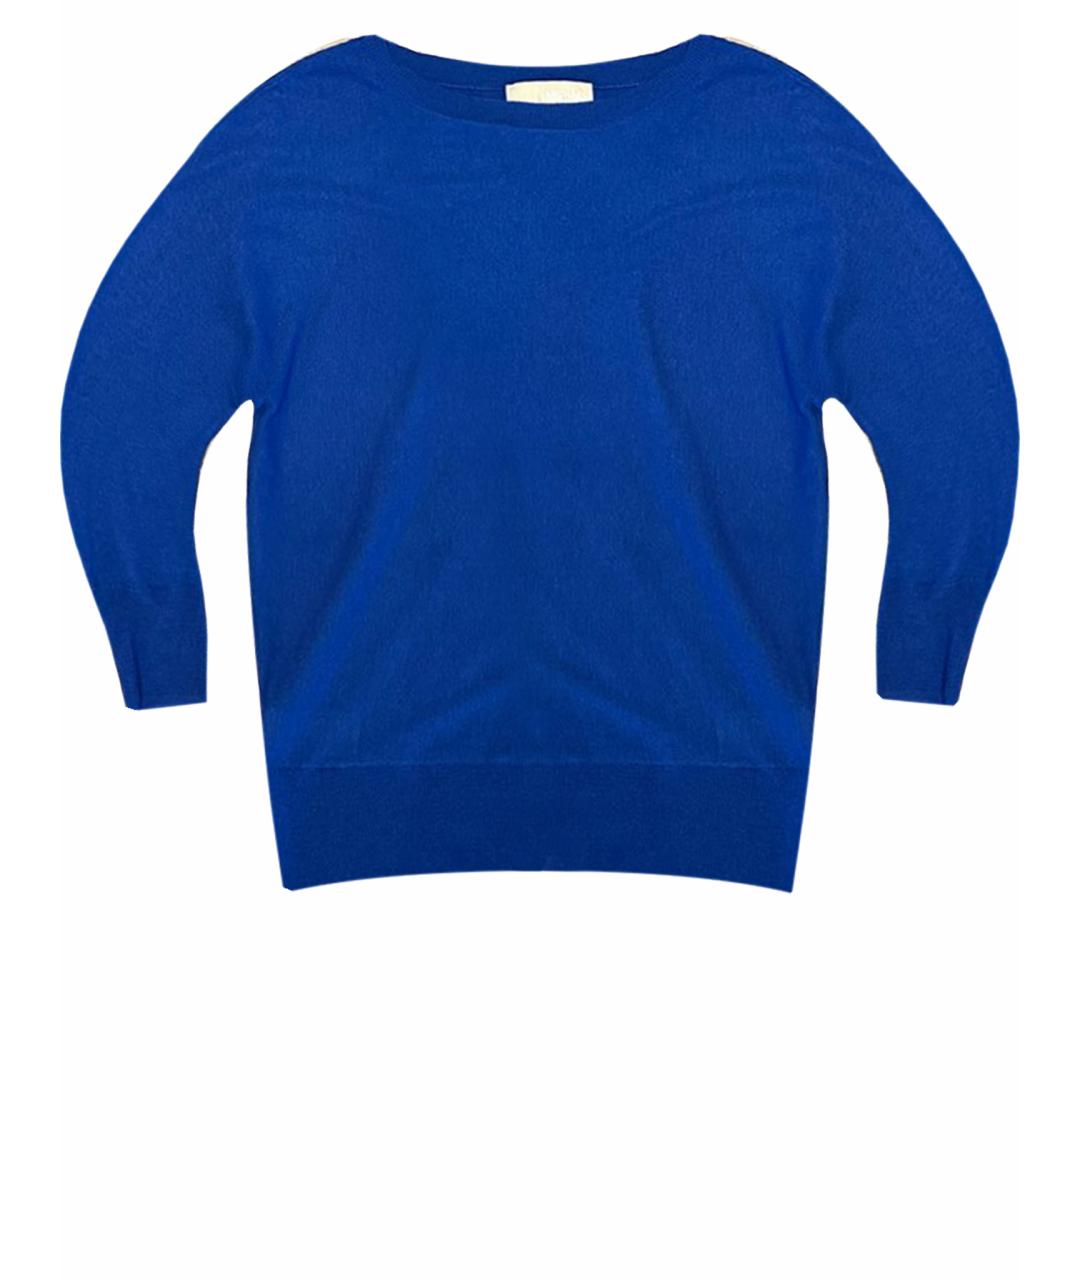 MICHAEL KORS Синий кашемировый джемпер / свитер, фото 1